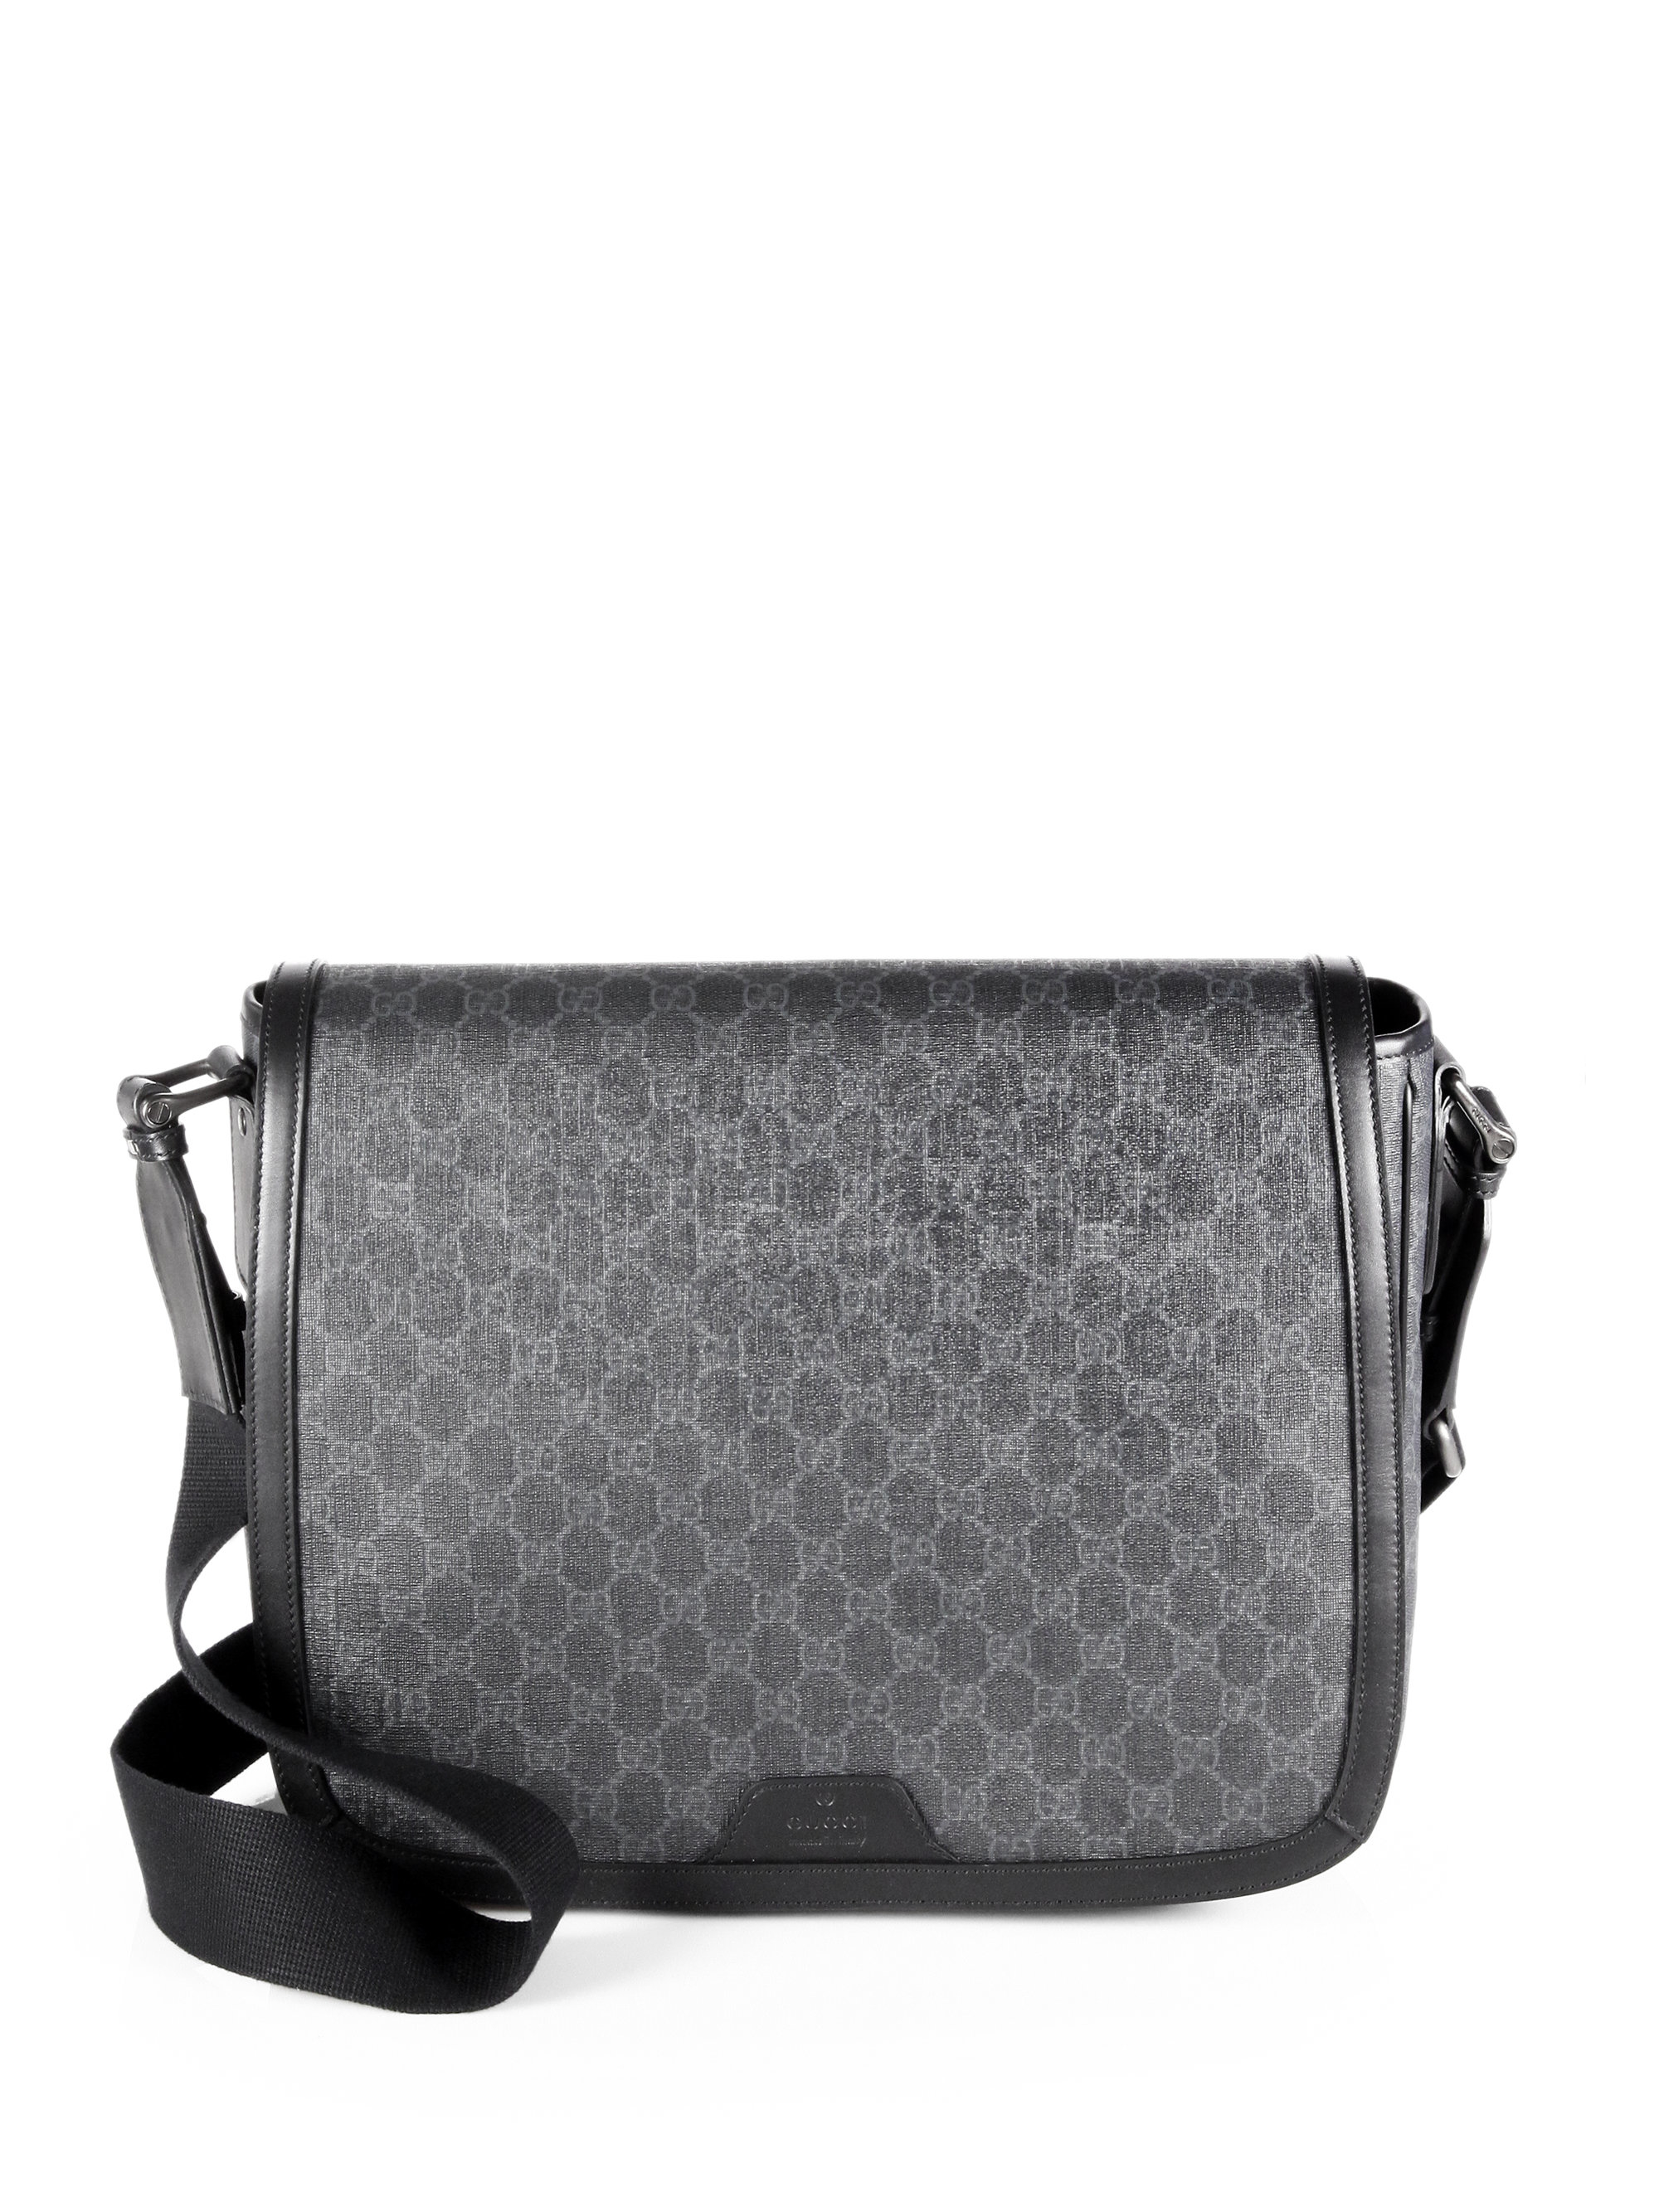 Lyst - Gucci Gg Messenger Bag in Black for Men